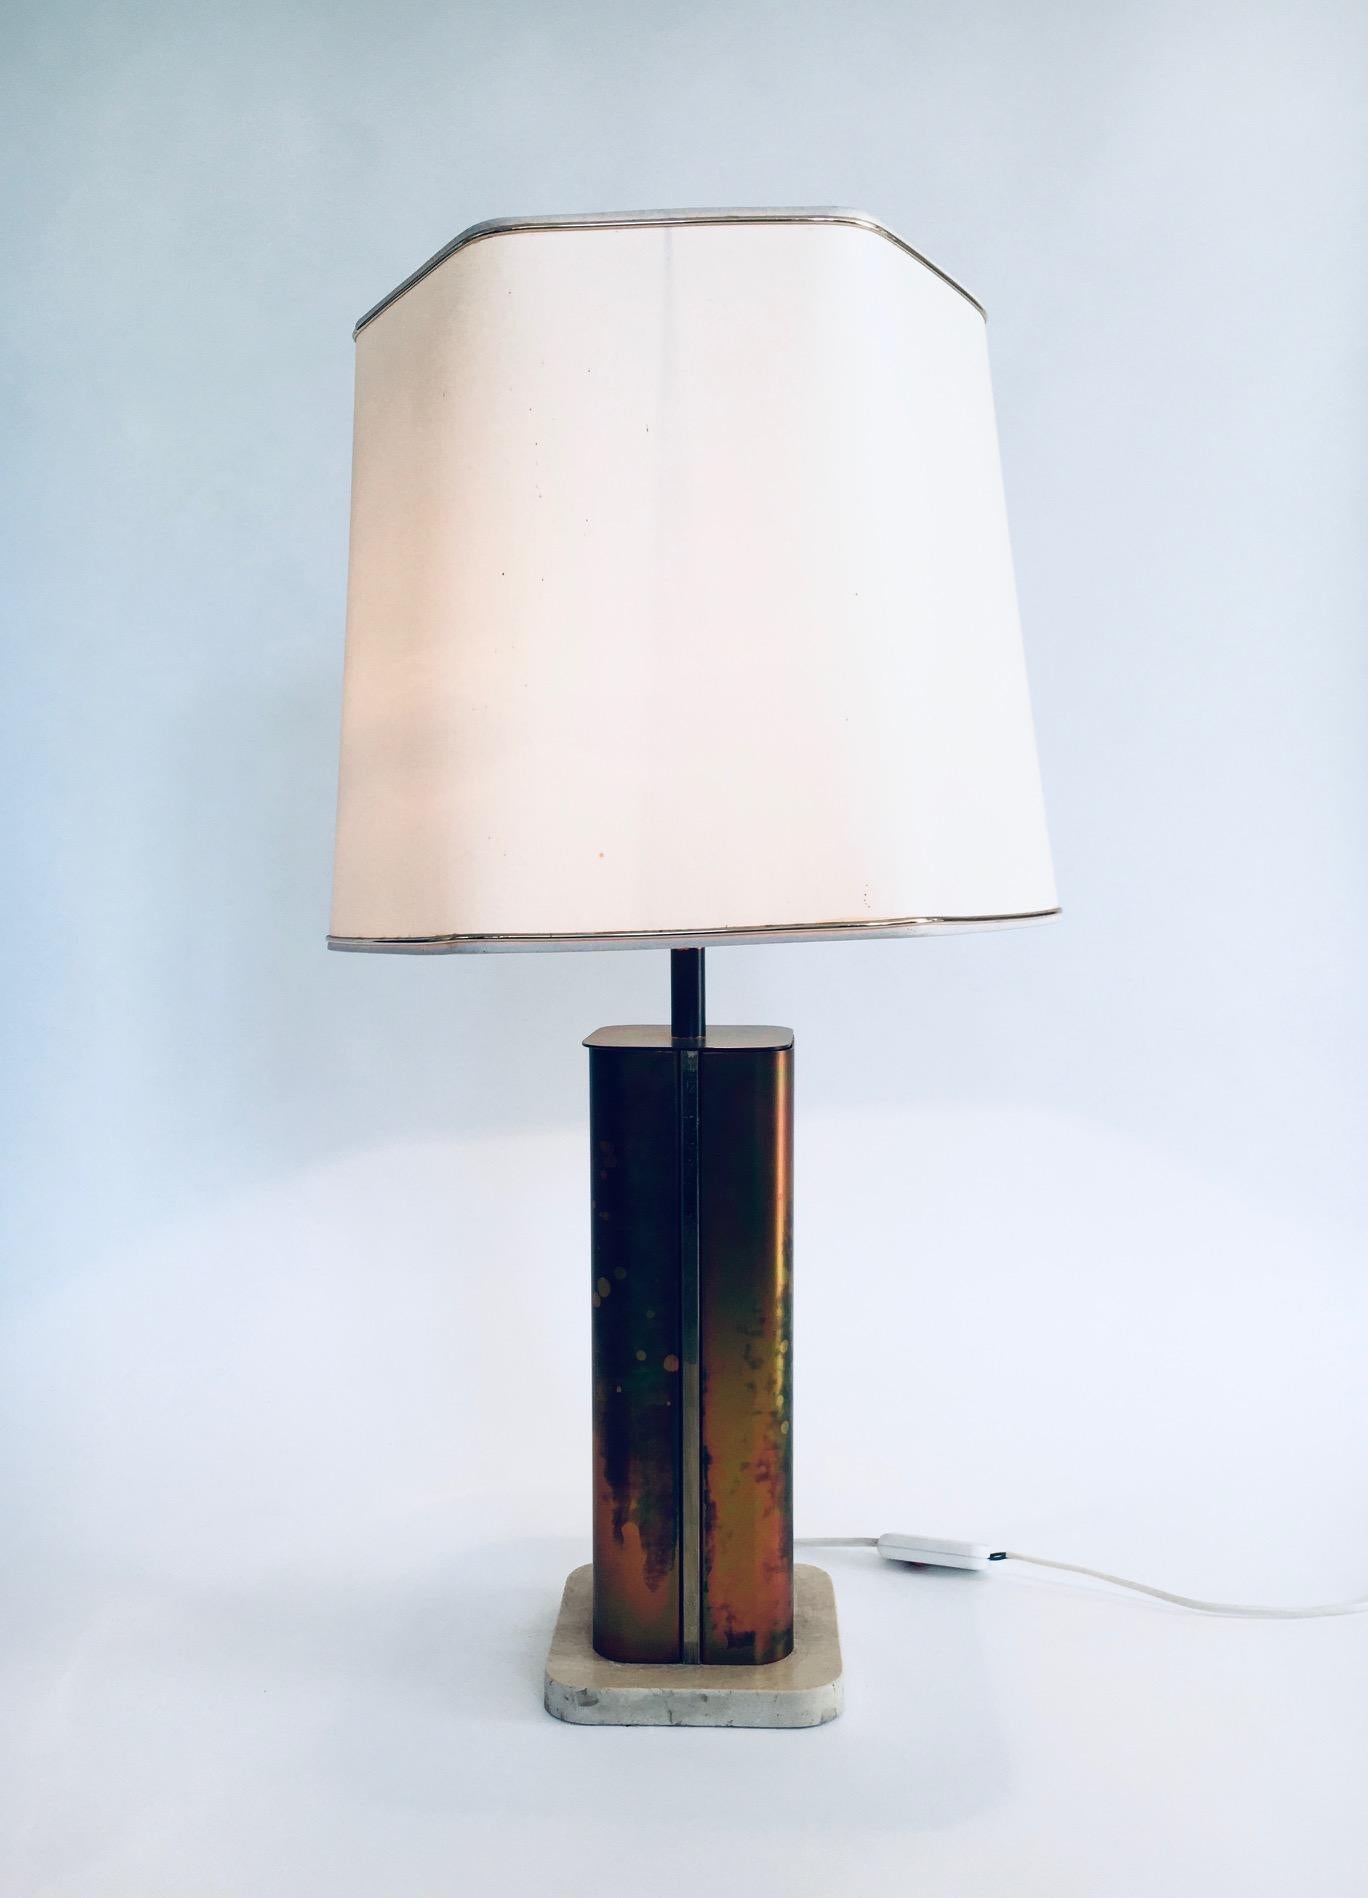 Vintage Hollywood Regency Style Postmodern Design Lamp by Fedam, fabriqué aux Pays-Bas dans les années 1970. Cette lampe de table est composée d'une base en laiton, laiton oxydé et marbre travertin avec un abat-jour hexagonal. L'abat-jour n'est pas